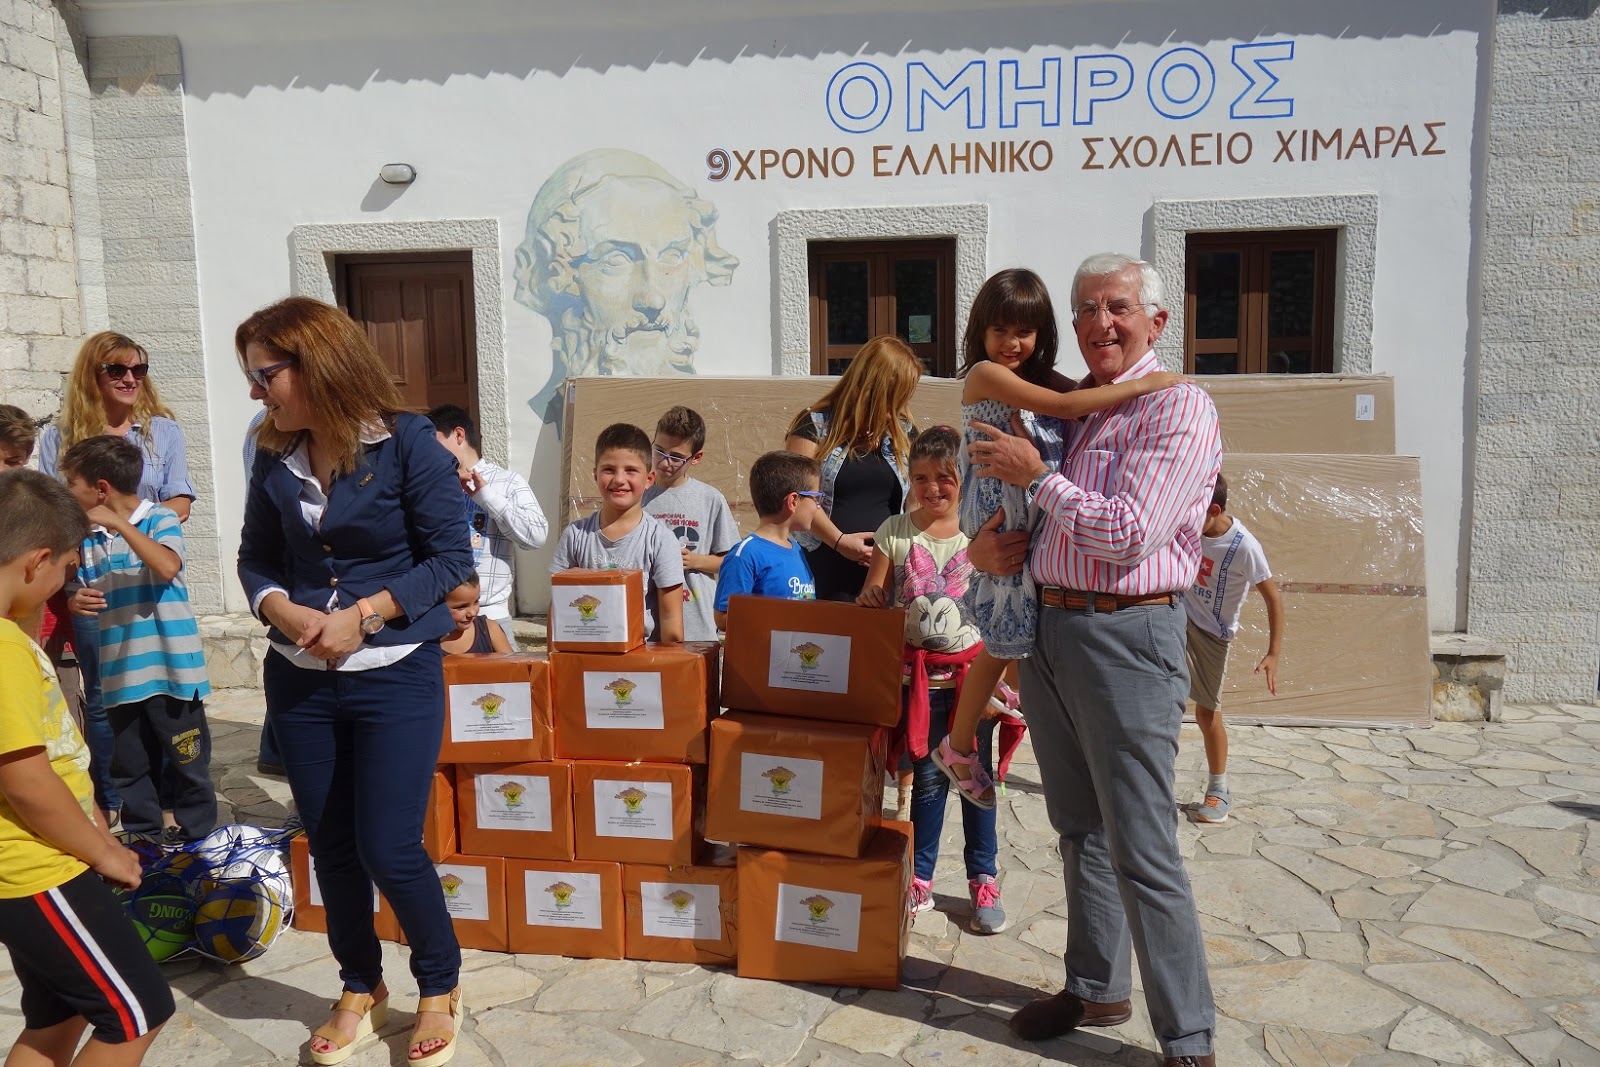 ΕΑΑΣ Ξάνθης: Μεγάλη Ανταπόκριση στην έκκληση για βοήθεια Eλληνικών Σχολείων Χιμάρας και Αργυροκάστρου (ΦΩΤΟ-ΕΥΧΑΡΙΣΤΗΡΙΑ) - Φωτογραφία 12